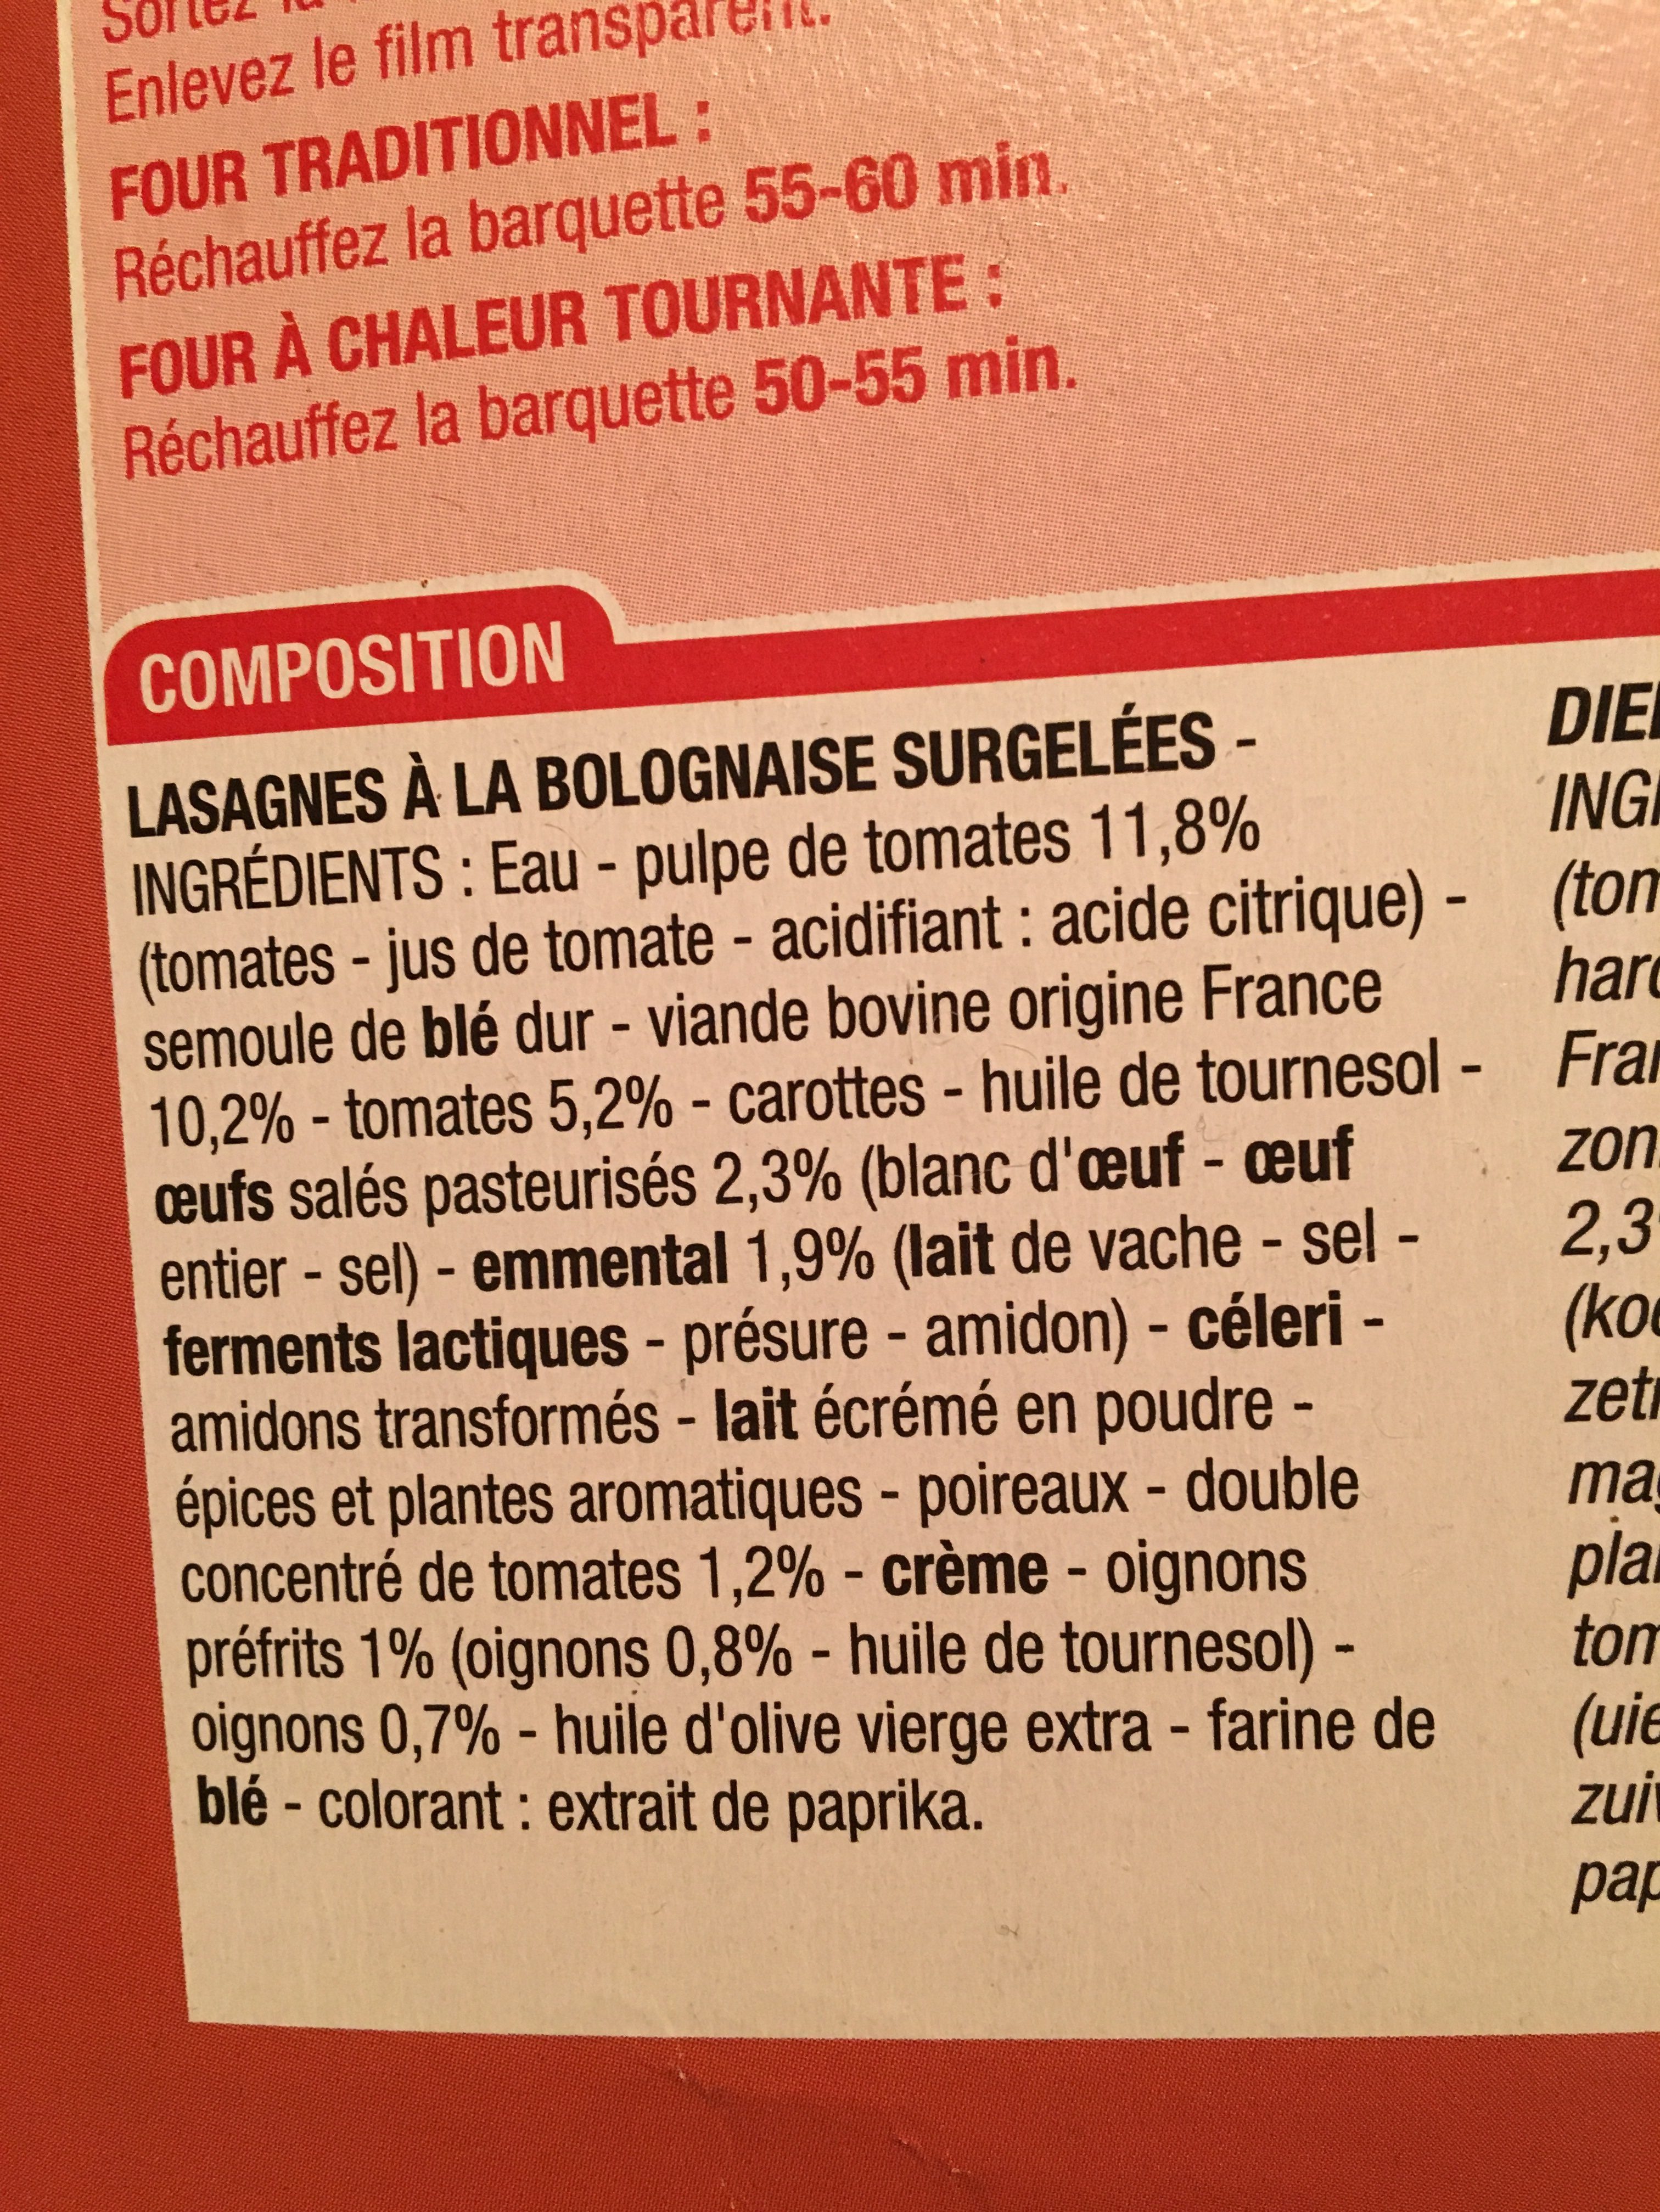 Lasagnes bolognaises surgelées - Ingredients - fr